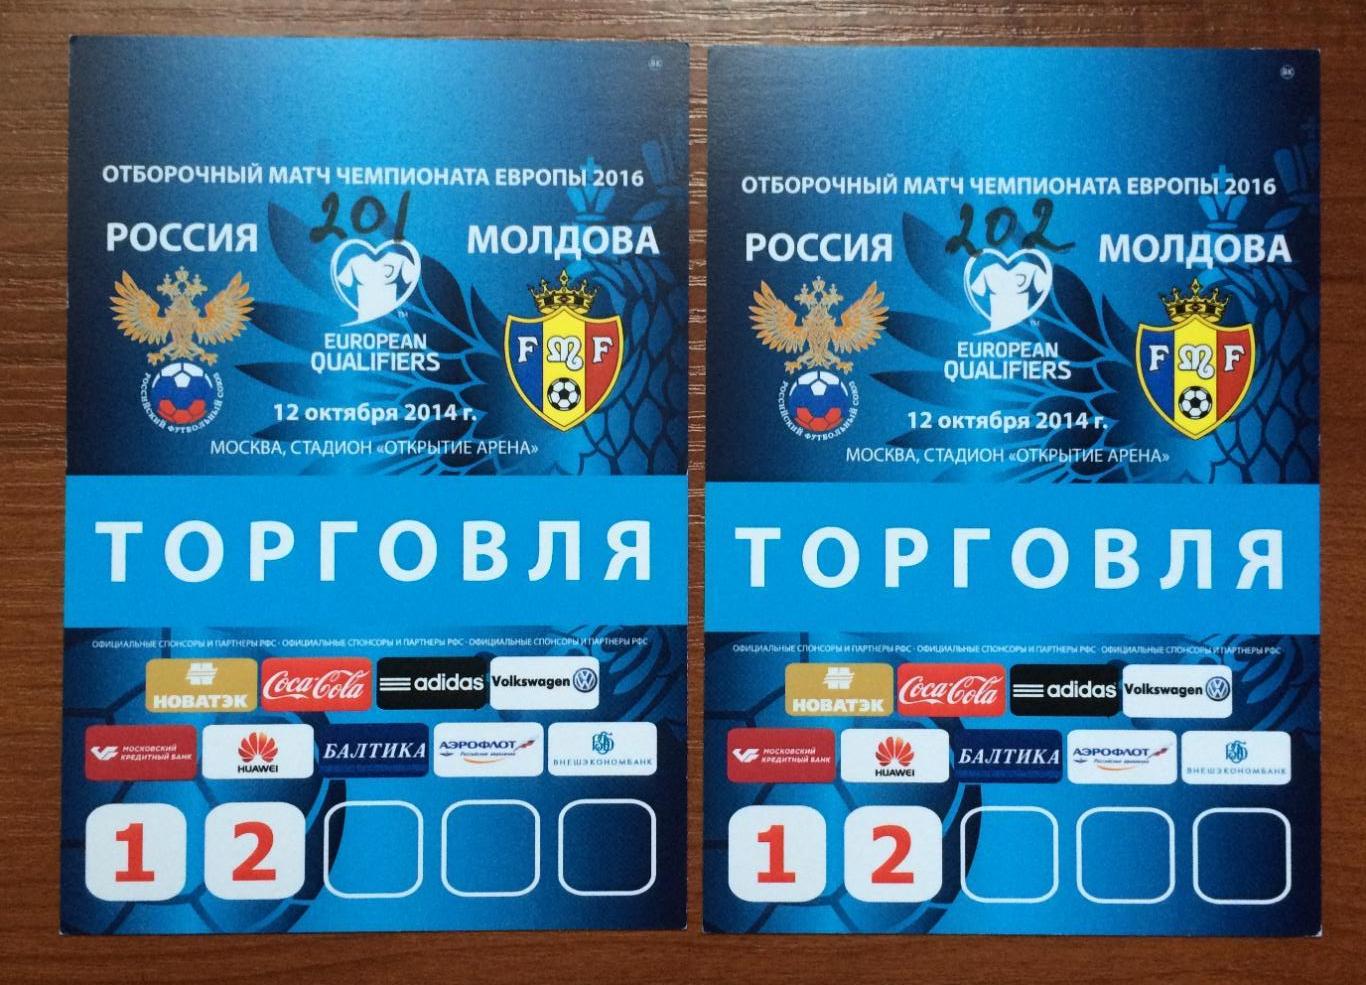 Аккредитация ТОРГОВЛЯ футбол сборные Россия - Молдова 12.10.2014 год